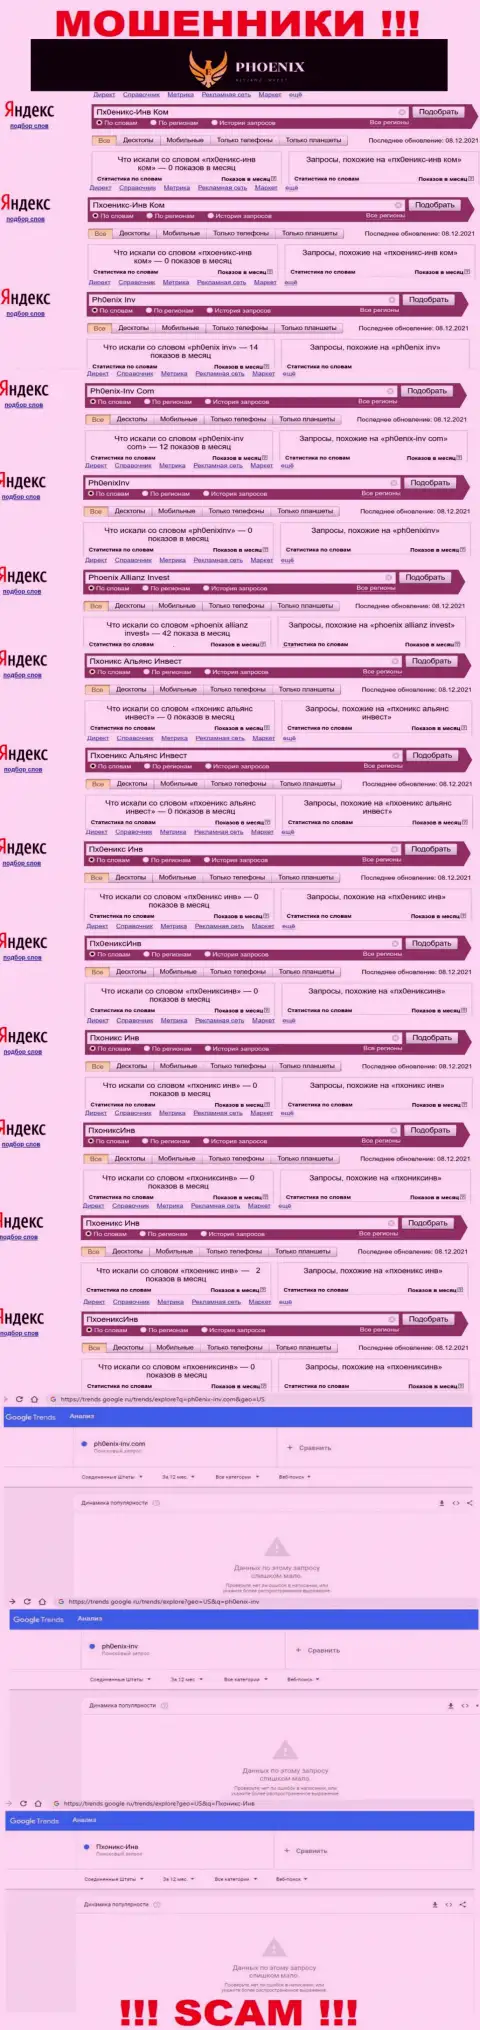 Скрин результата поисковых запросов по противозаконно действующей компании Пх0ениксИнв